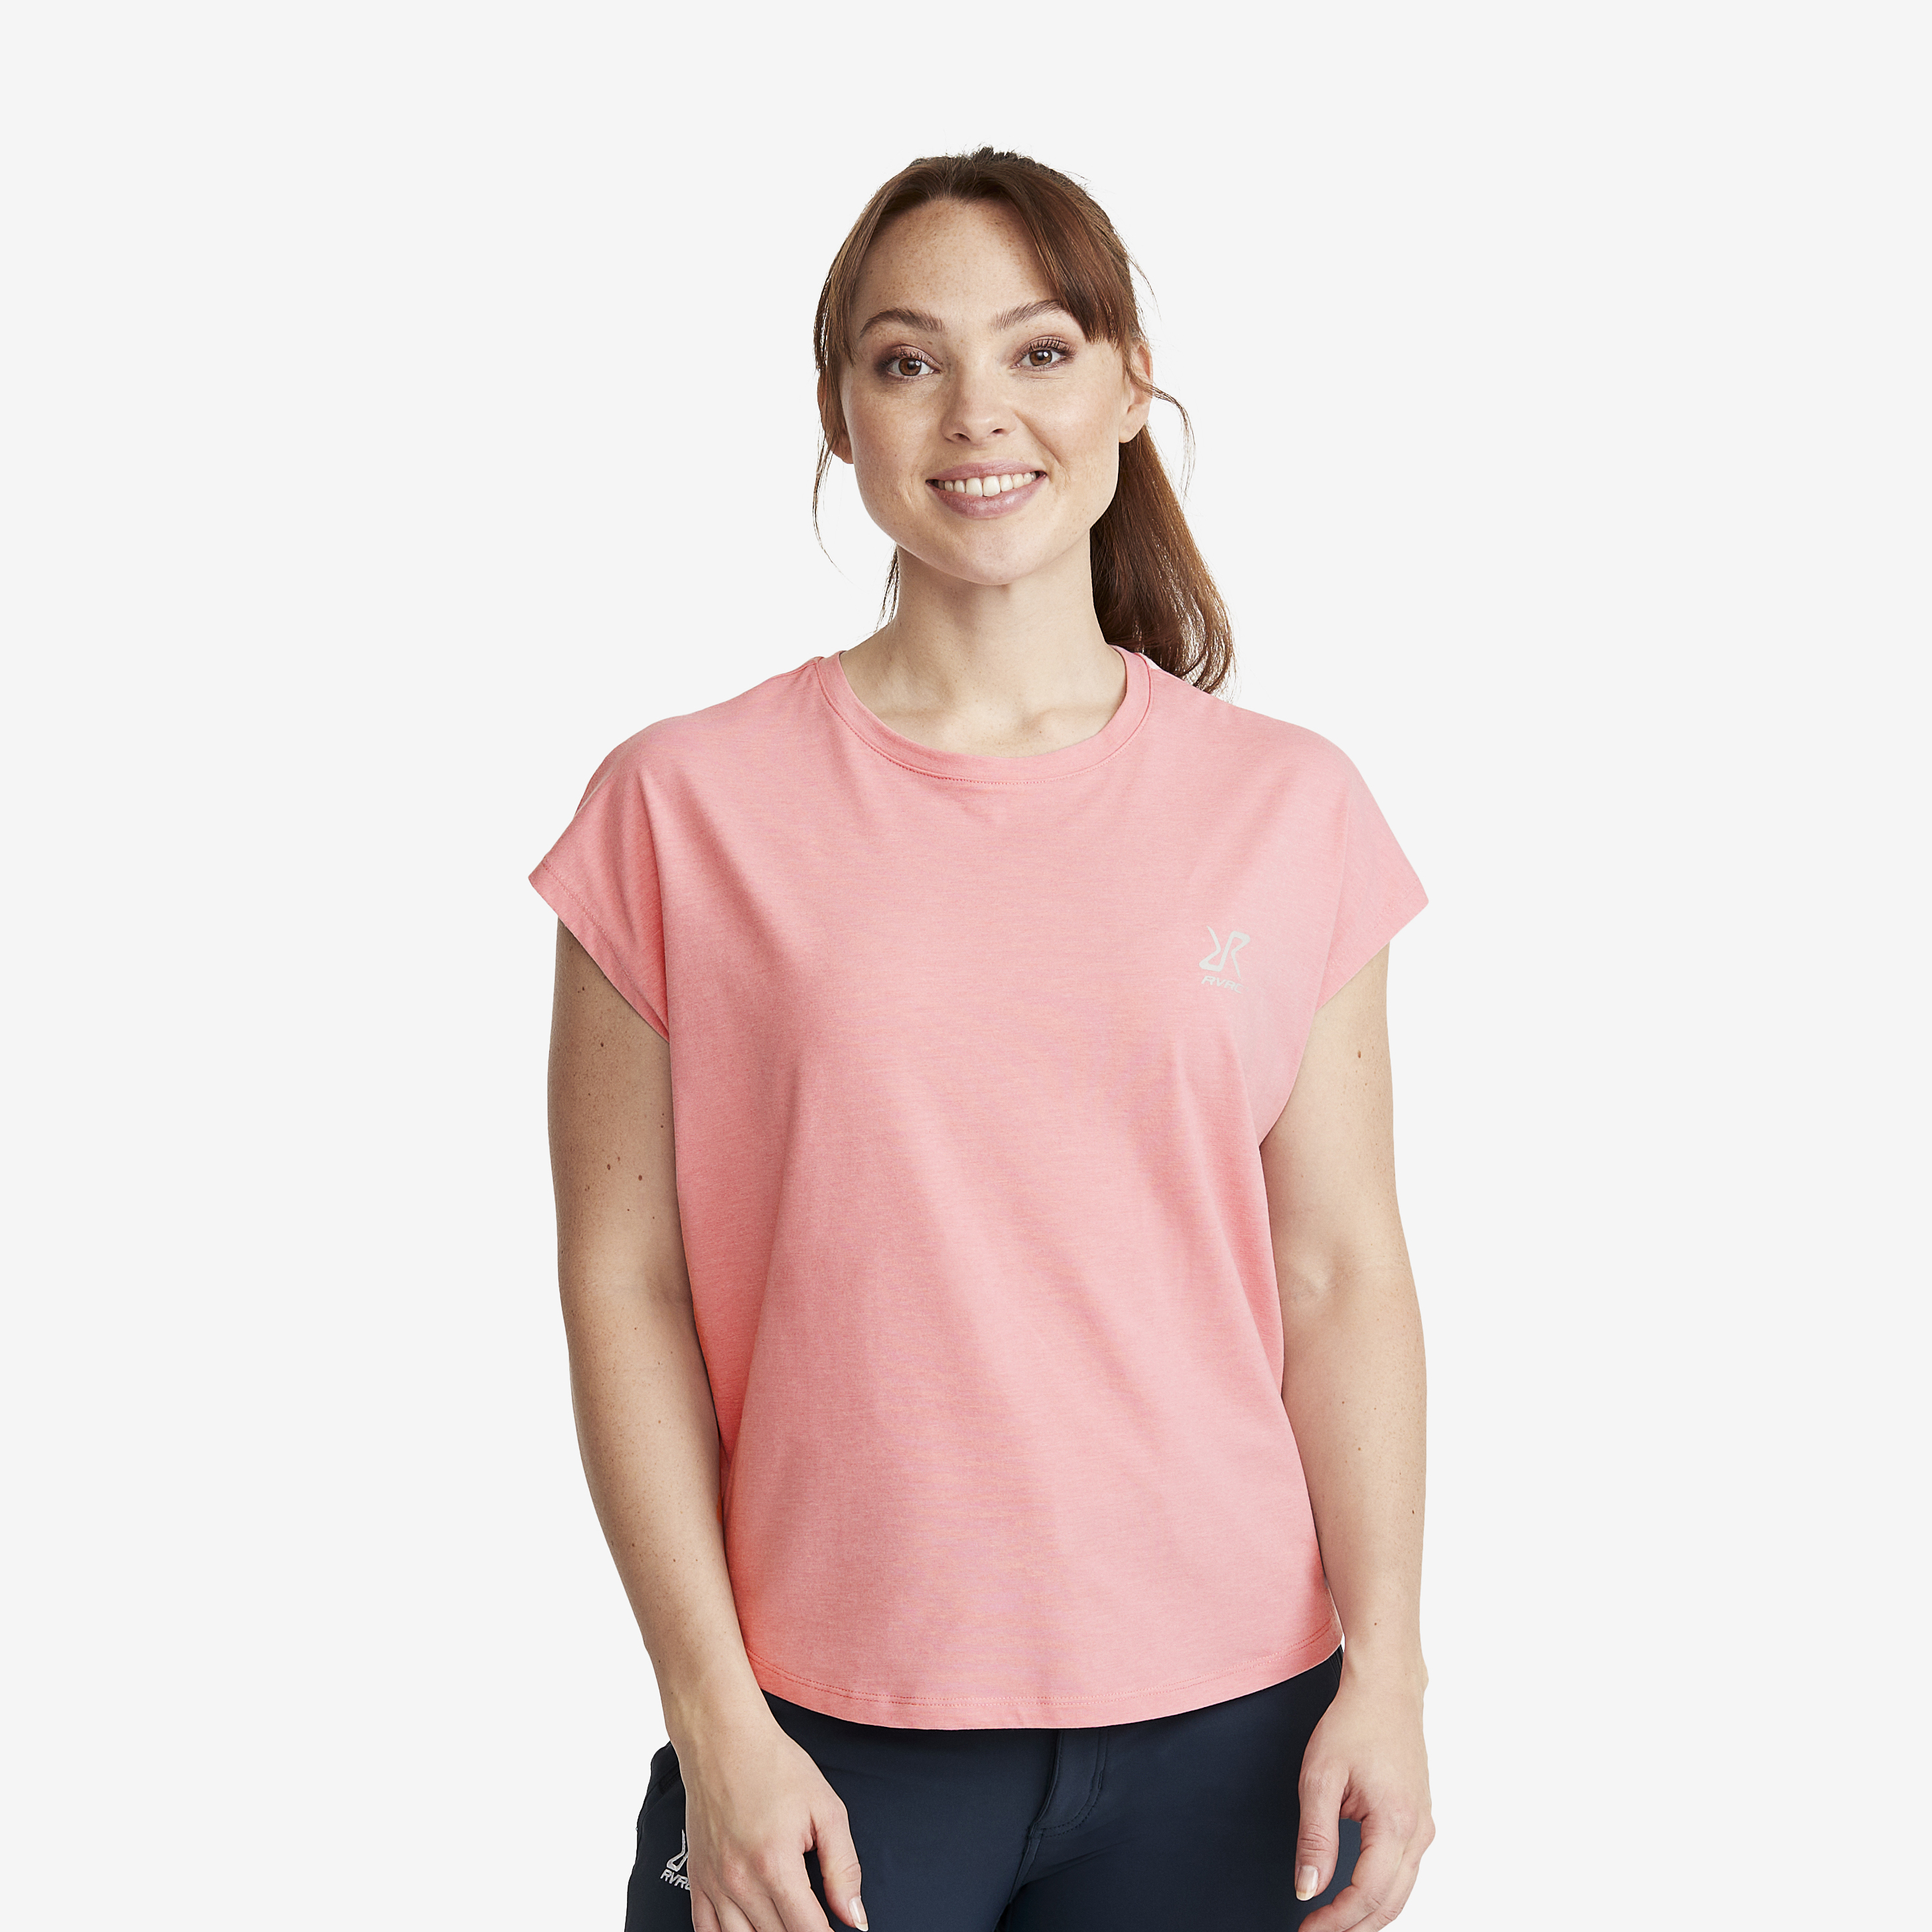 Soft Sleeveless Top - Dam - Dusty Pink, Storlek:3XL - Dam > Tröjor > T-shirts